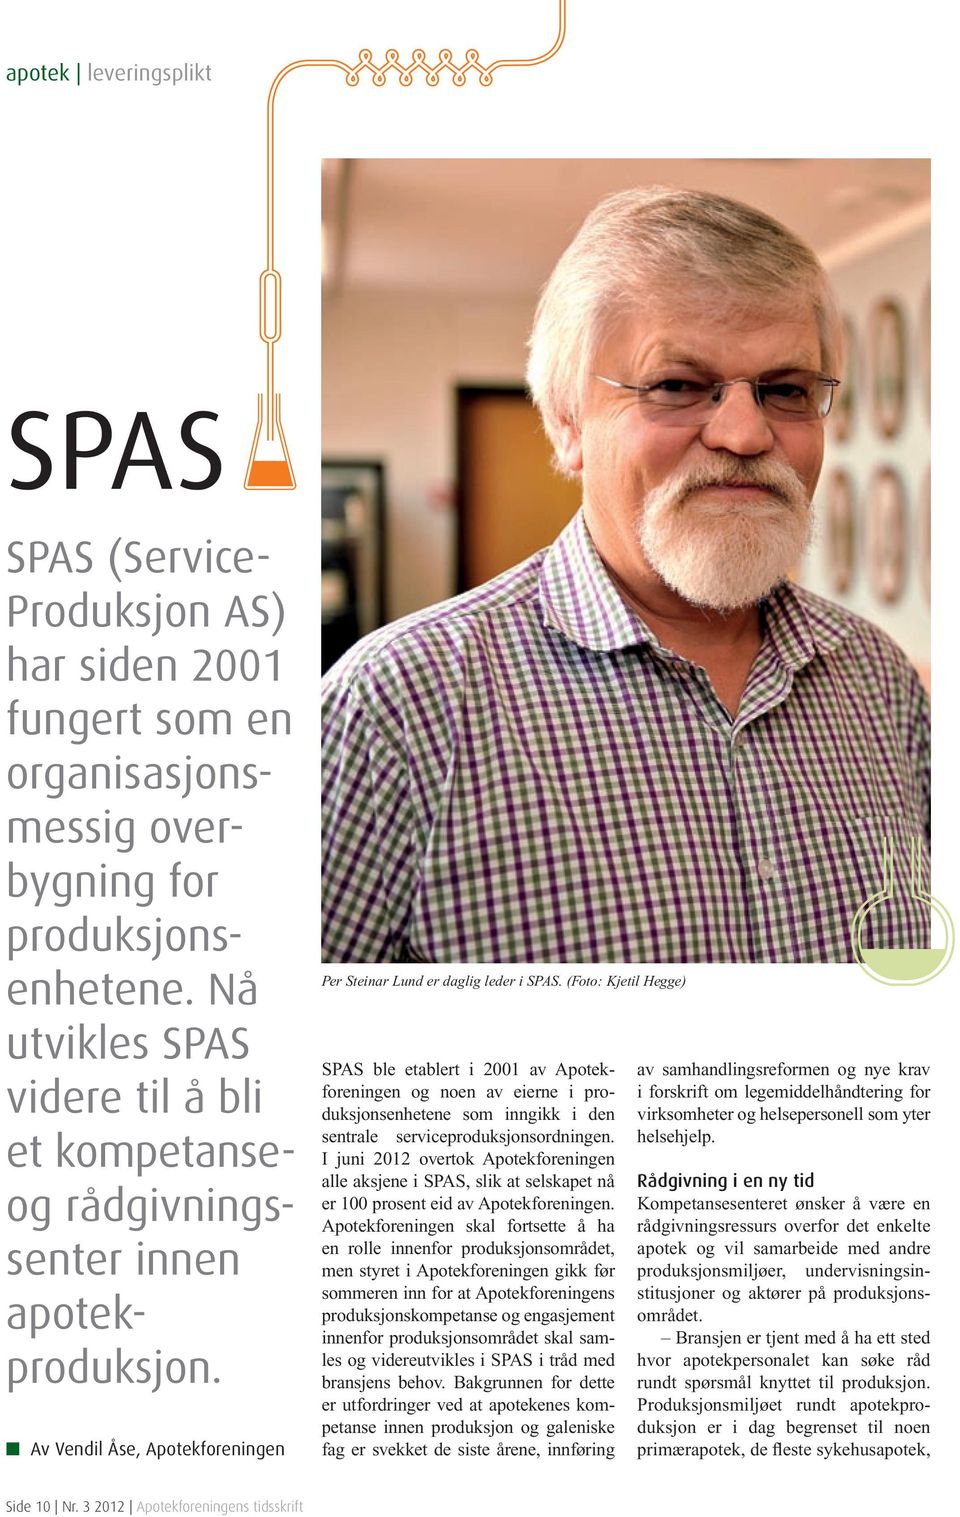 (Foto: Kjetil Hegge) SPAS ble etablert i 2001 av Apotekforeningen og noen av eierne i produksjonsenhetene som inngikk i den sentrale serviceproduksjonsordningen.